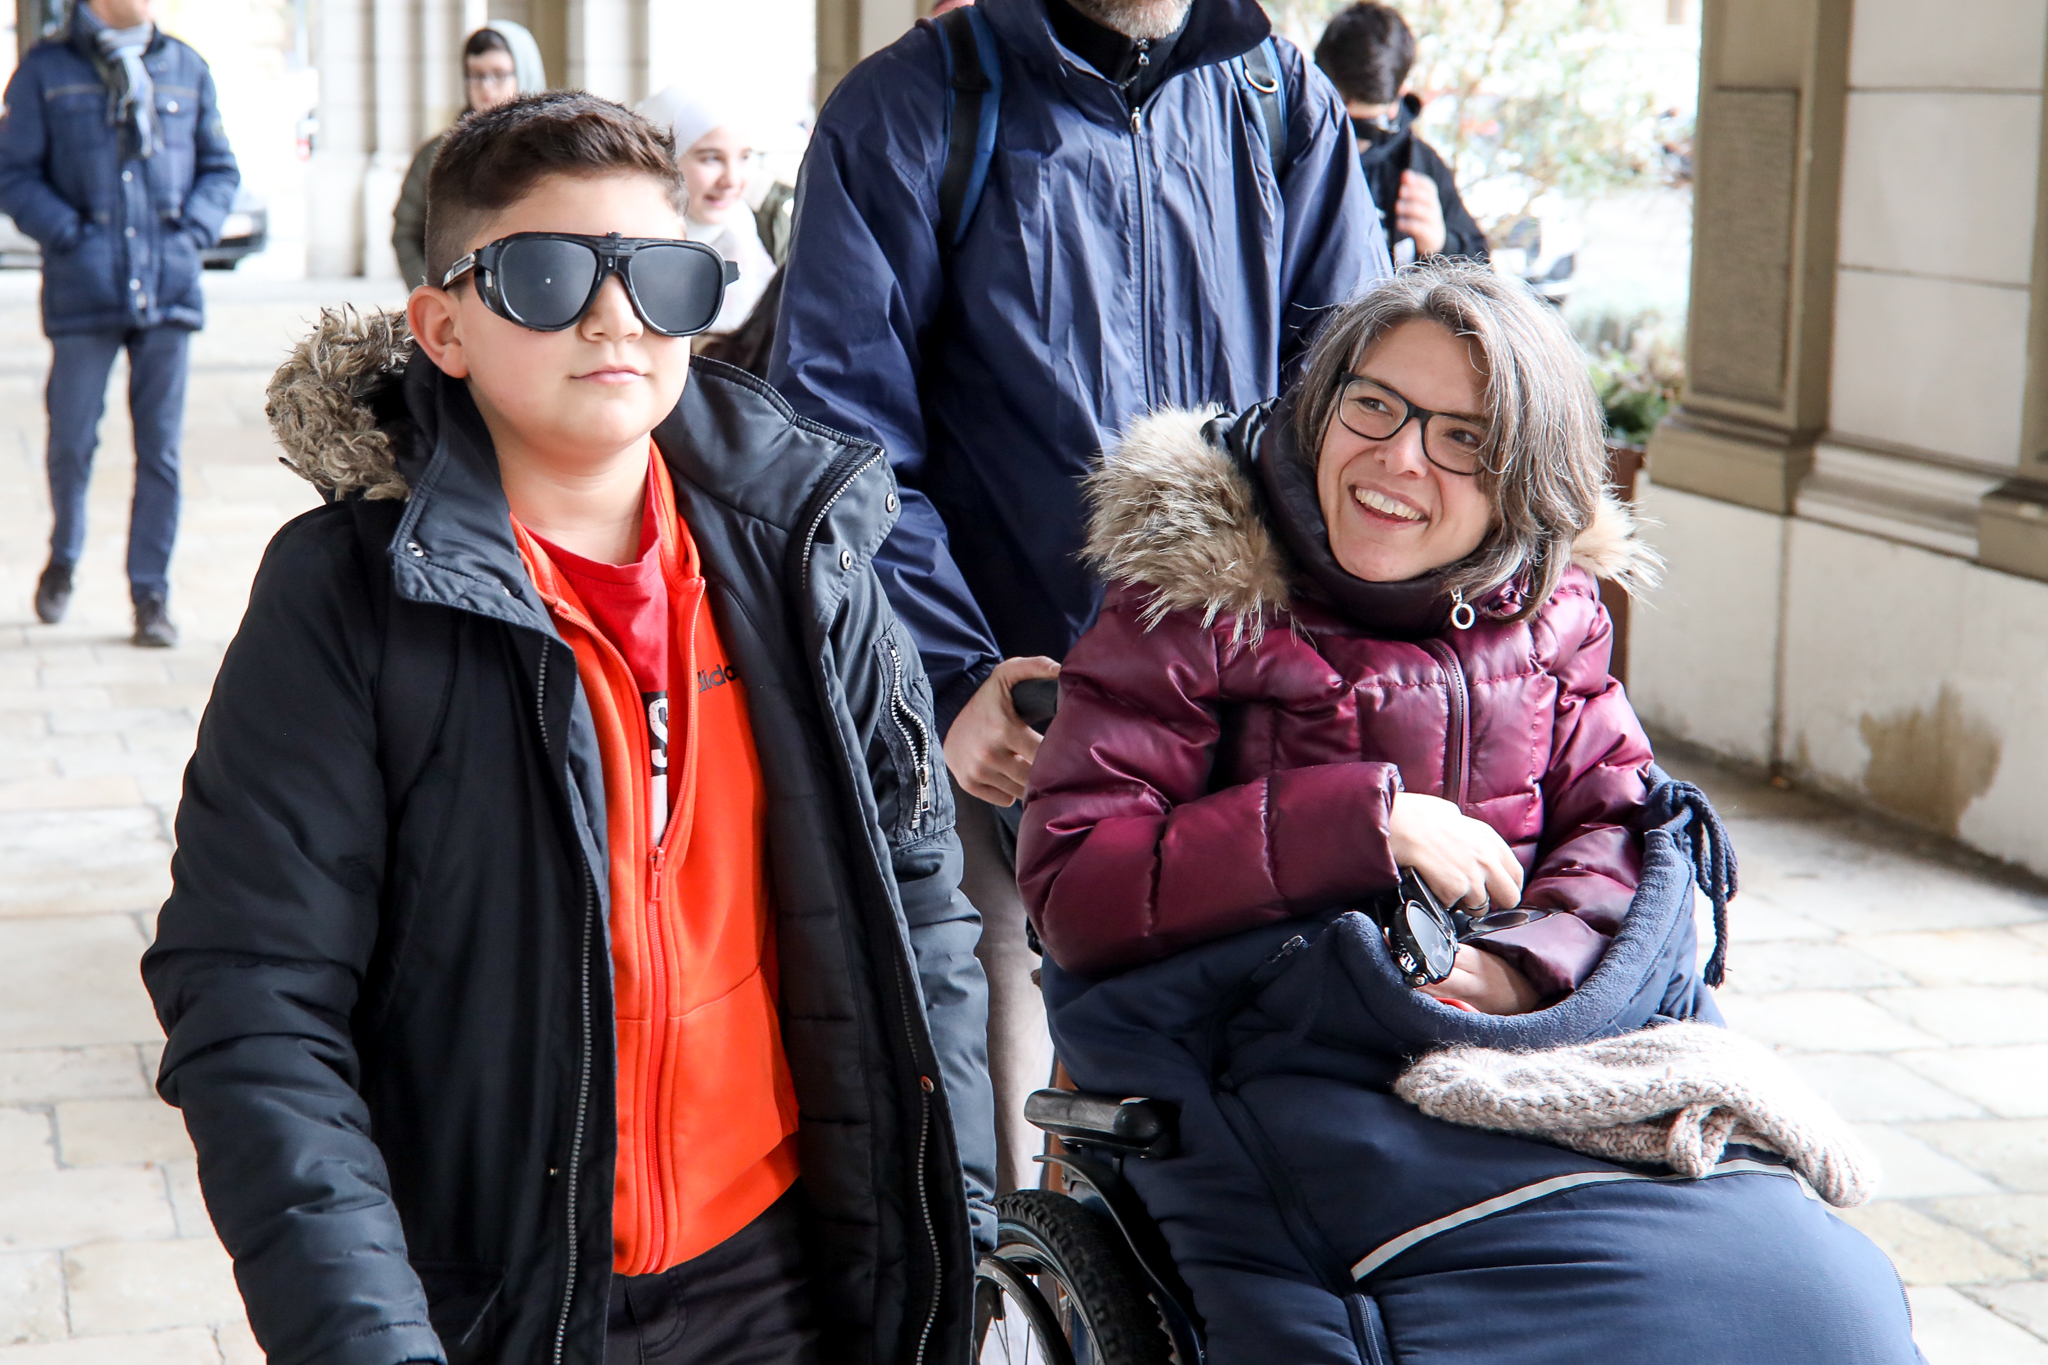 Ein Schüler geht mit einer Schlechtsehbrille. Maria Grundner, Expertin für Barrierefreiheit, fährt daneben mit dem Rollstuhl.